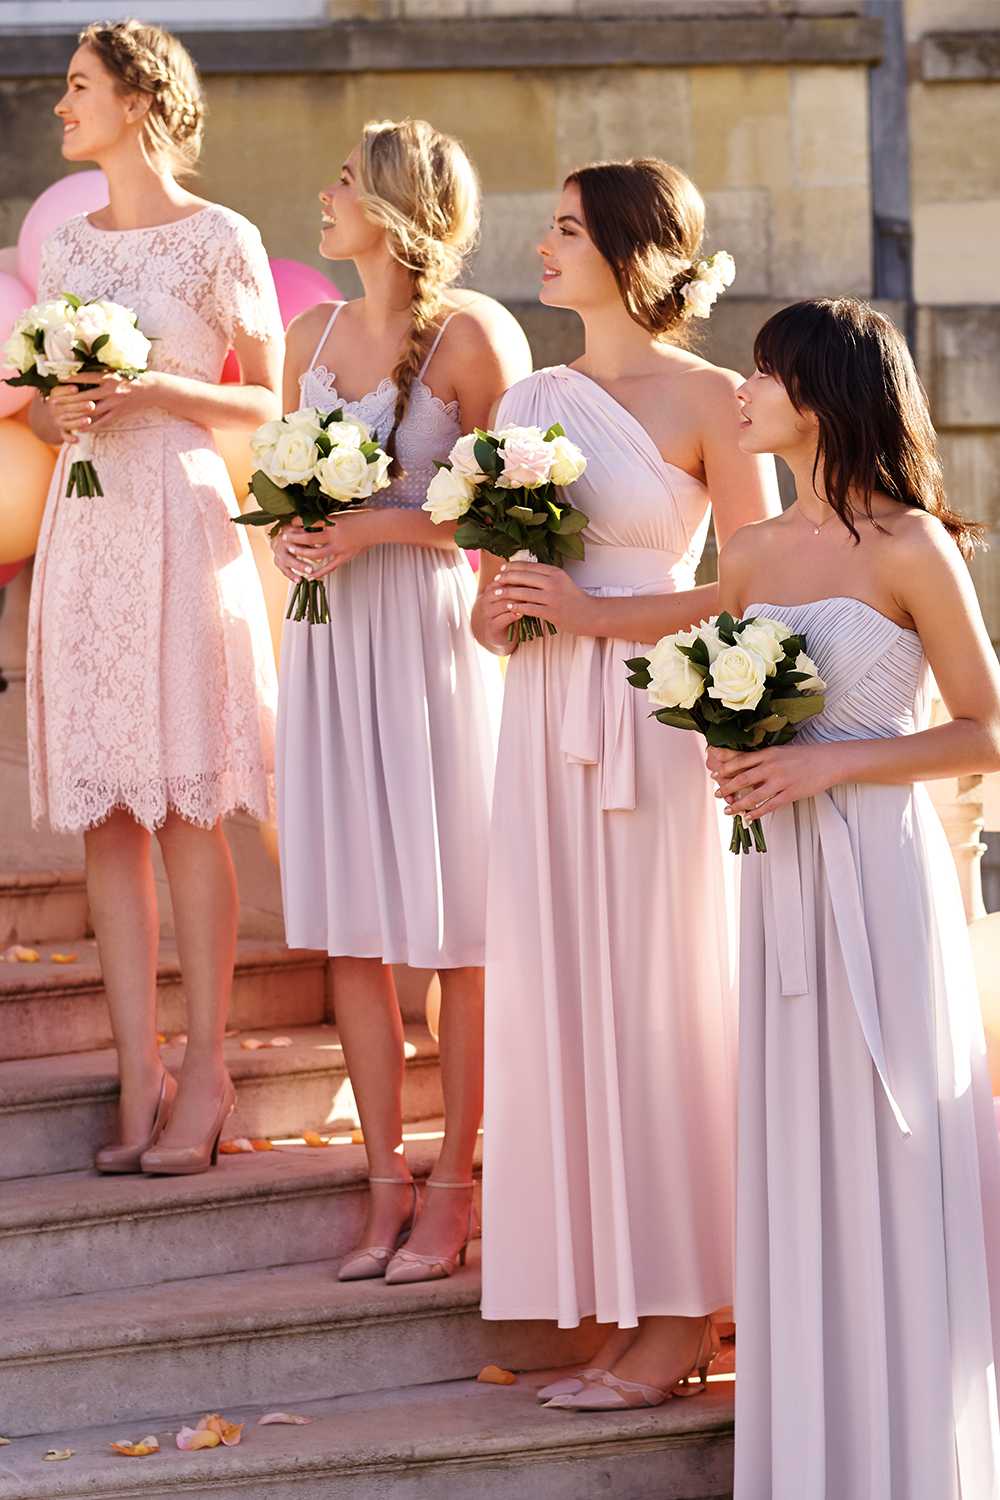 Легкие прически на свадьбу (60 фото): простые и красивые свадебные укладки для подруги. как быстро сделать несложные варианты самой себе?